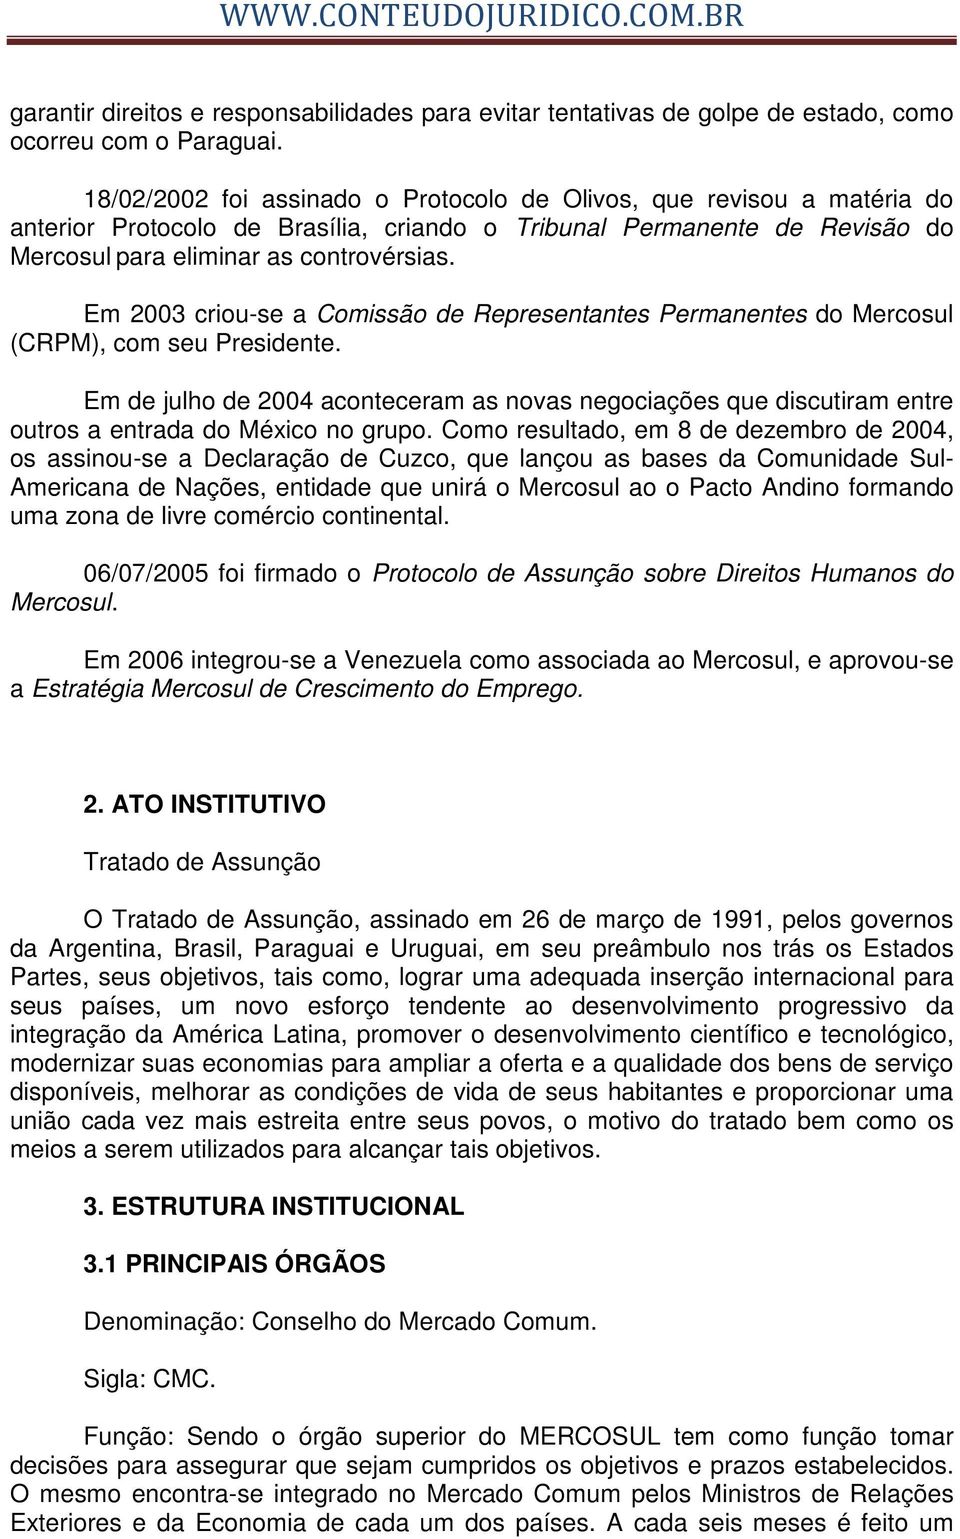 Em 2003 criou-se a Comissão de Representantes Permanentes do Mercosul (CRPM), com seu Presidente.